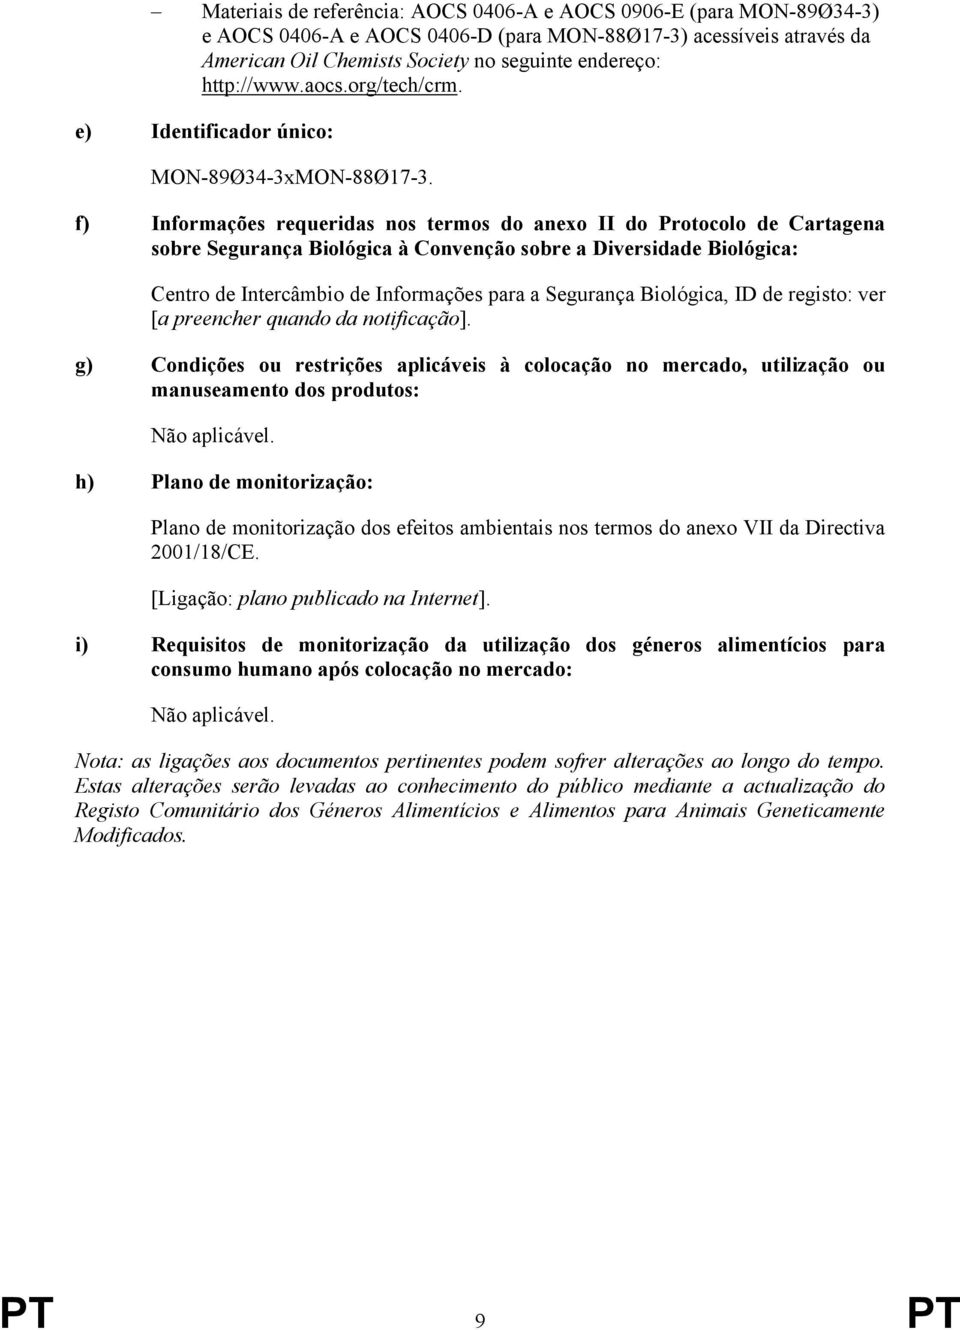 f) Informações requeridas nos termos do anexo II do Protocolo de Cartagena sobre Segurança Biológica à Convenção sobre a Diversidade Biológica: Centro de Intercâmbio de Informações para a Segurança